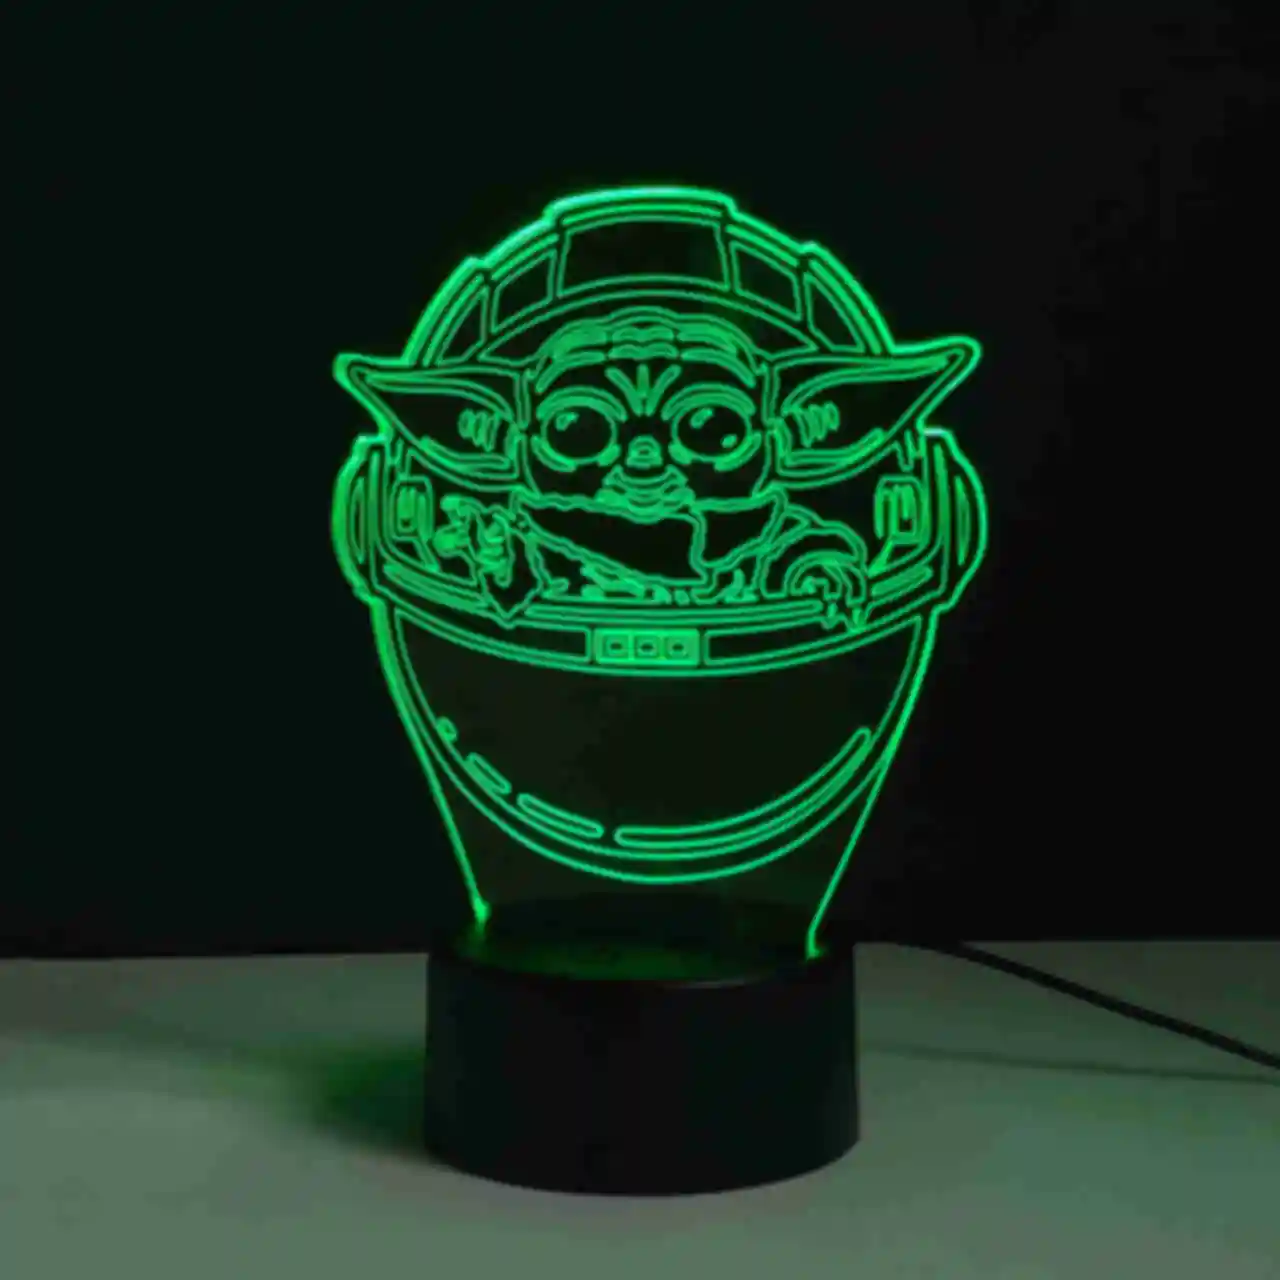 Светильник Baby Yoda ⦁ Лампа с малышом Грогу ⦁ Сувениры и аксессуары Star Wars и Mandalorian ⦁ Подарок Звездные Войны и Мандалорец. Фото №3